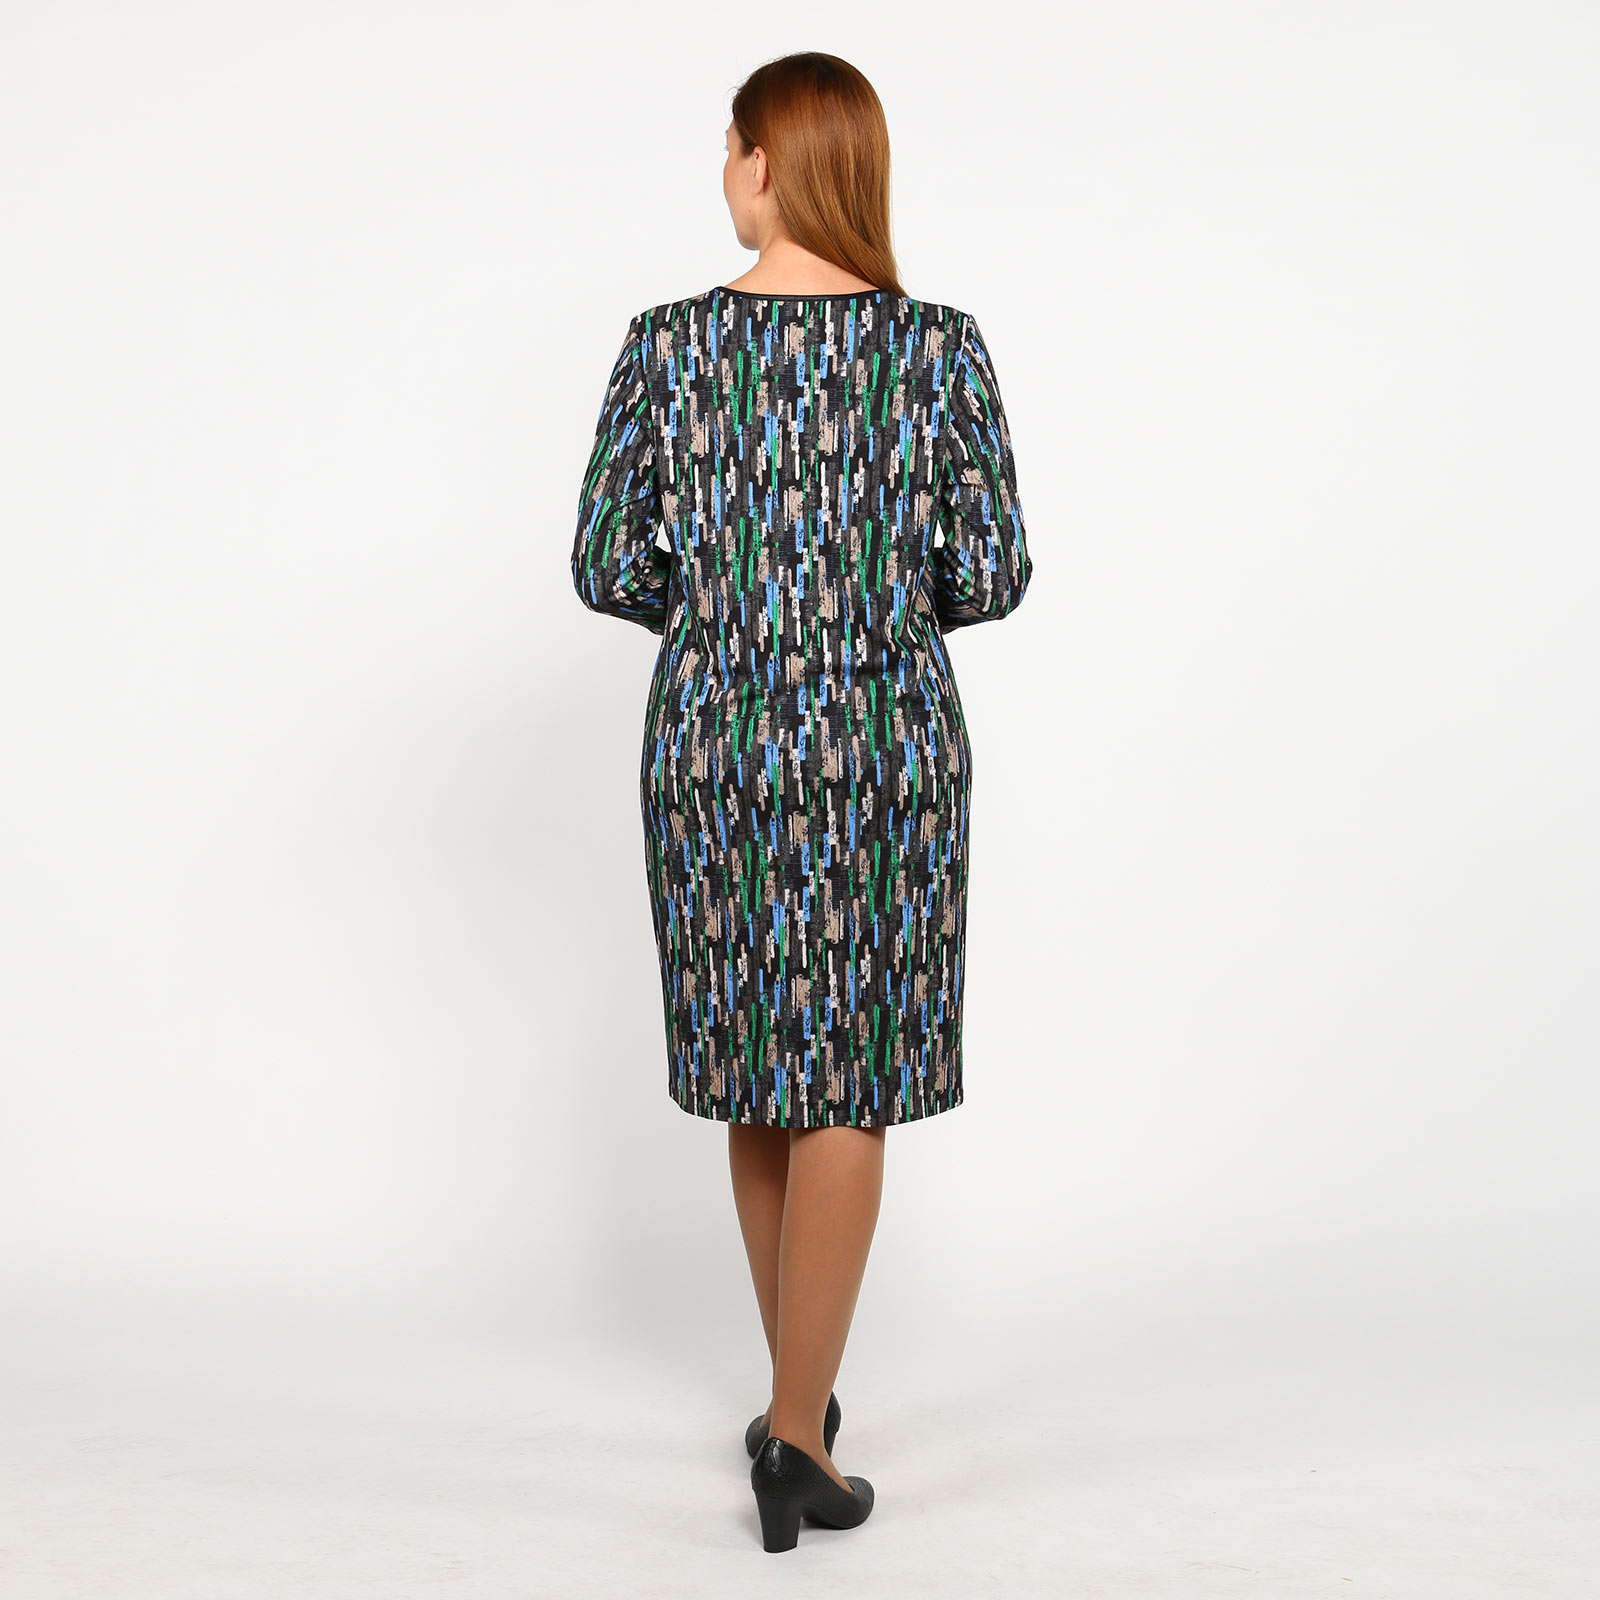 Платье прямого силуэта с контрастным принтом Bianka Modeno, размер 56, цвет разноцветный - фото 4